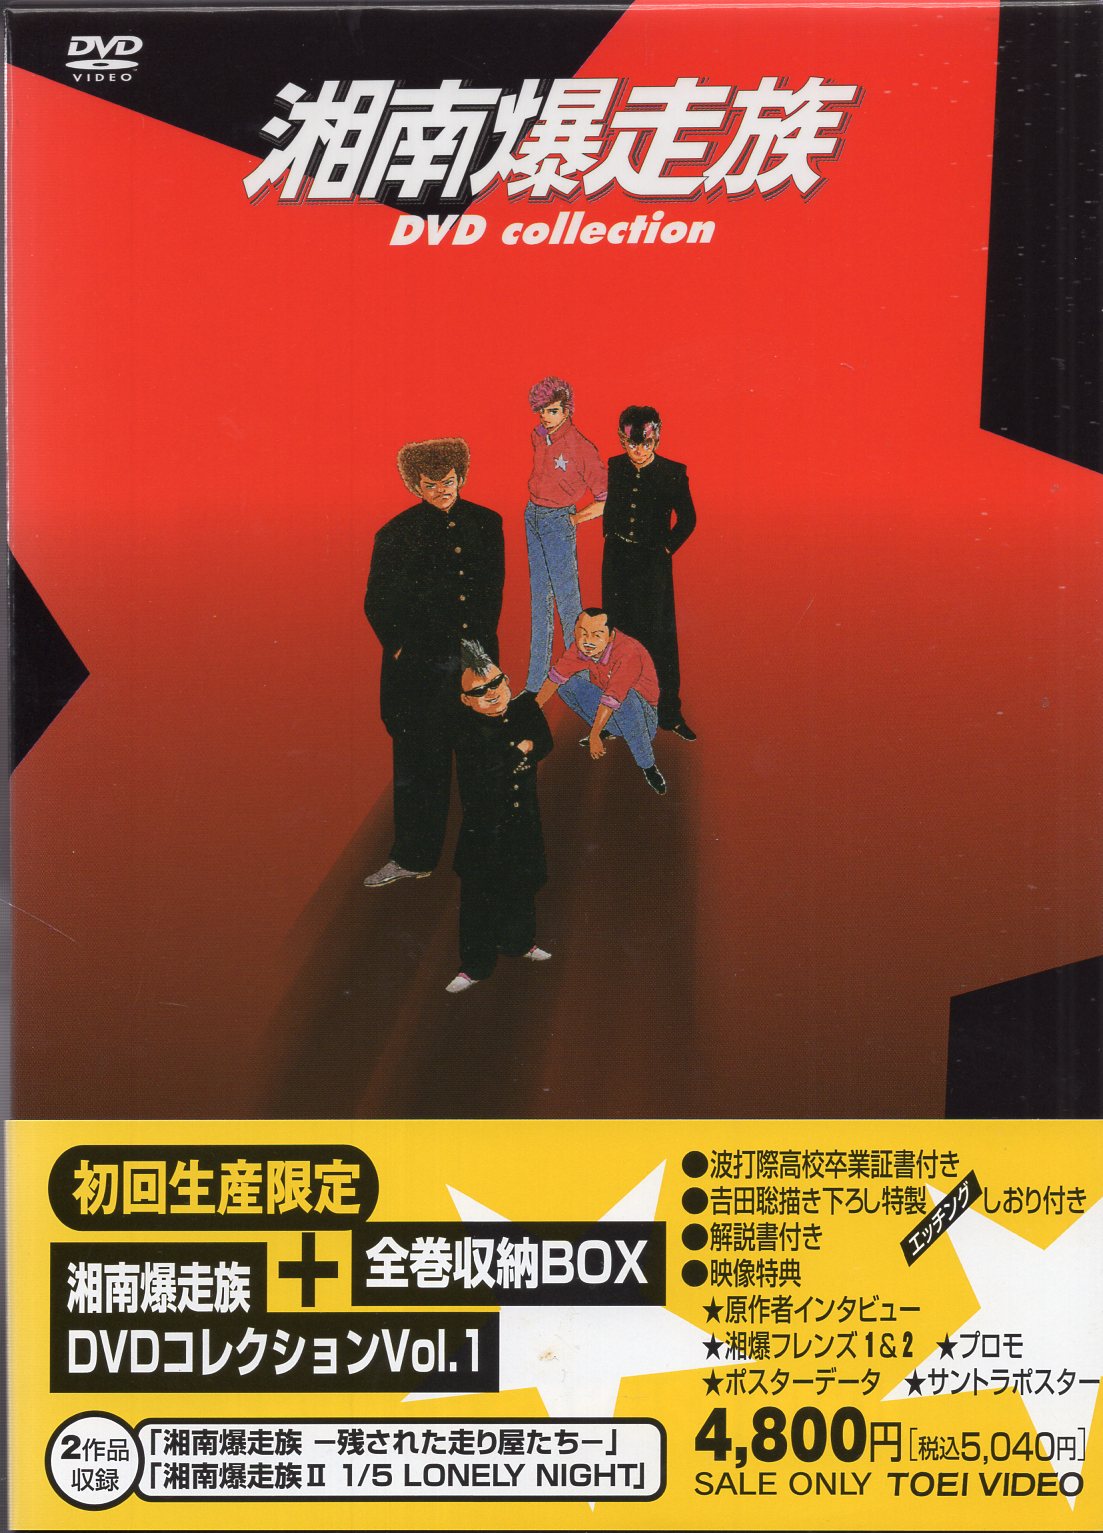 Anime DVD Shonan Bakusozoku First edition Limited Edition 1